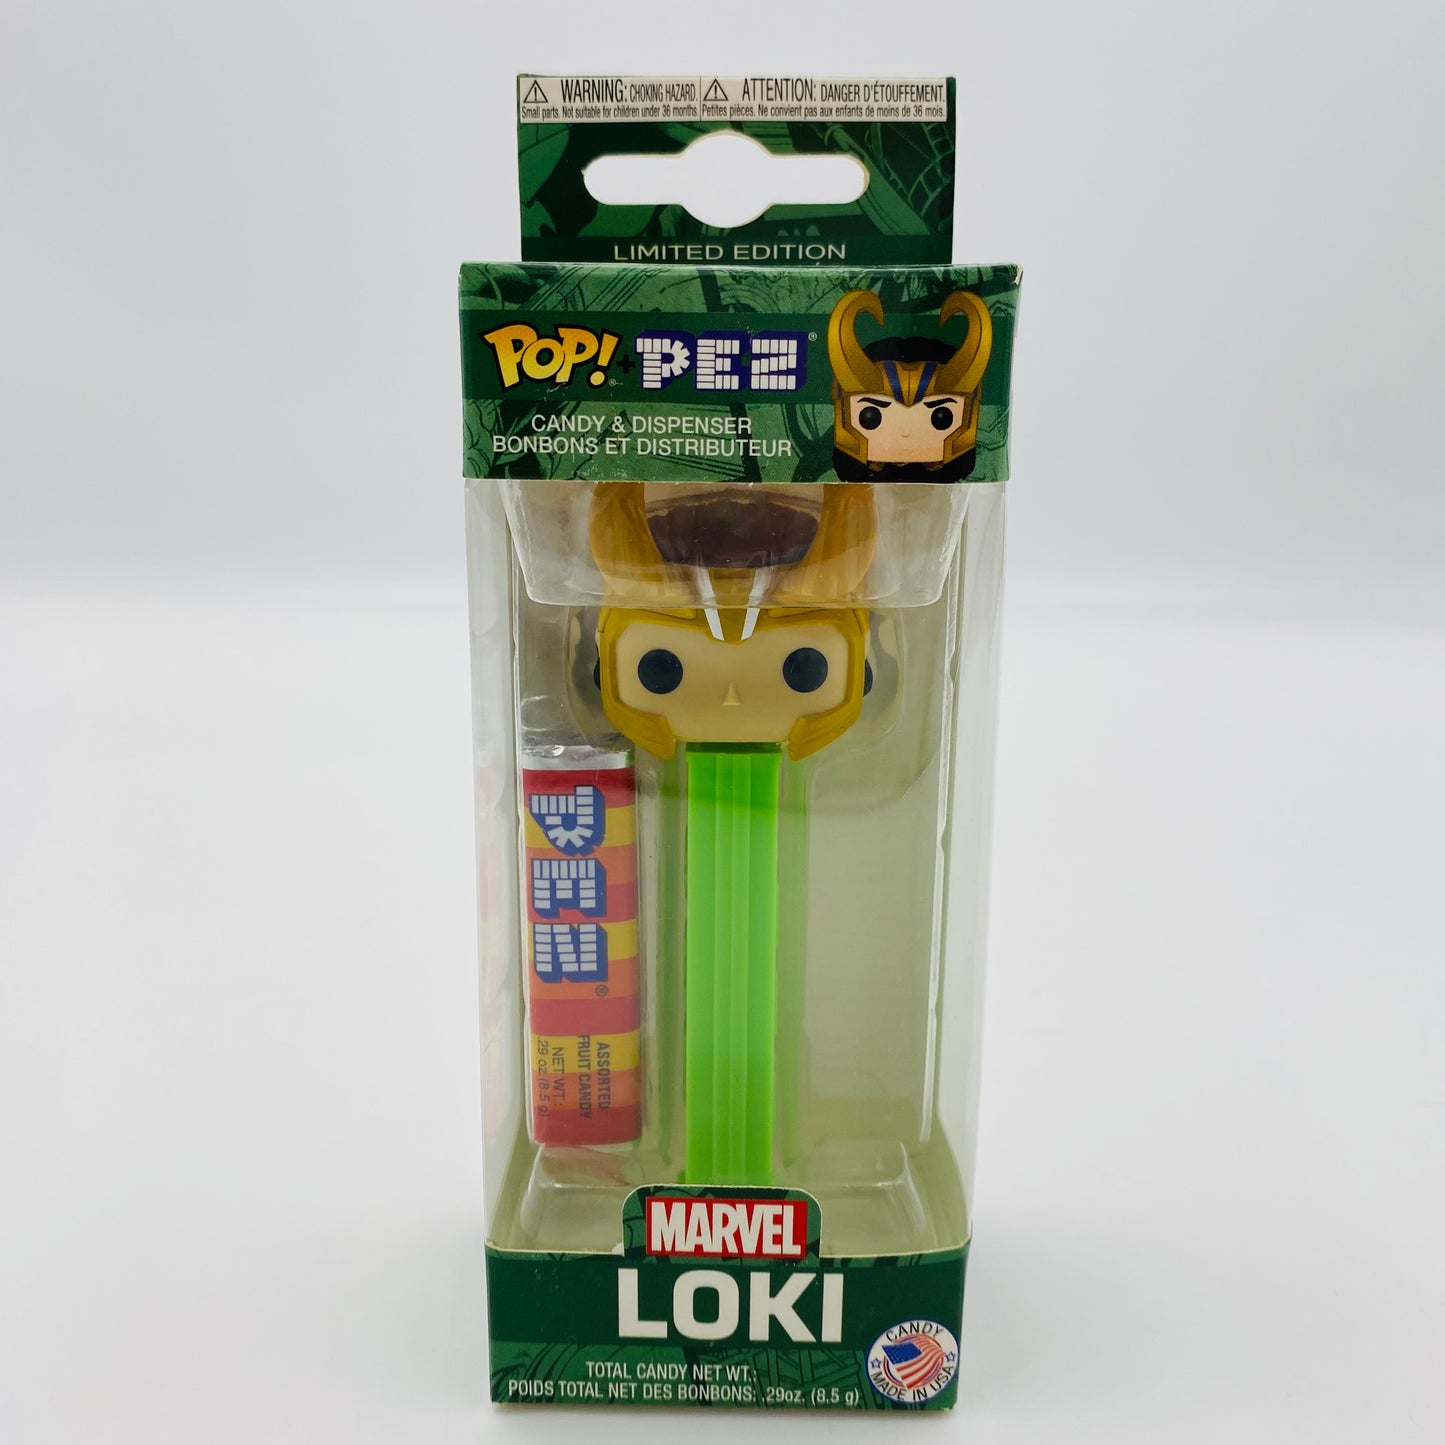 Marvel Thor Ragnarok Loki Pop! + PEZ dispenser (2018) boxed